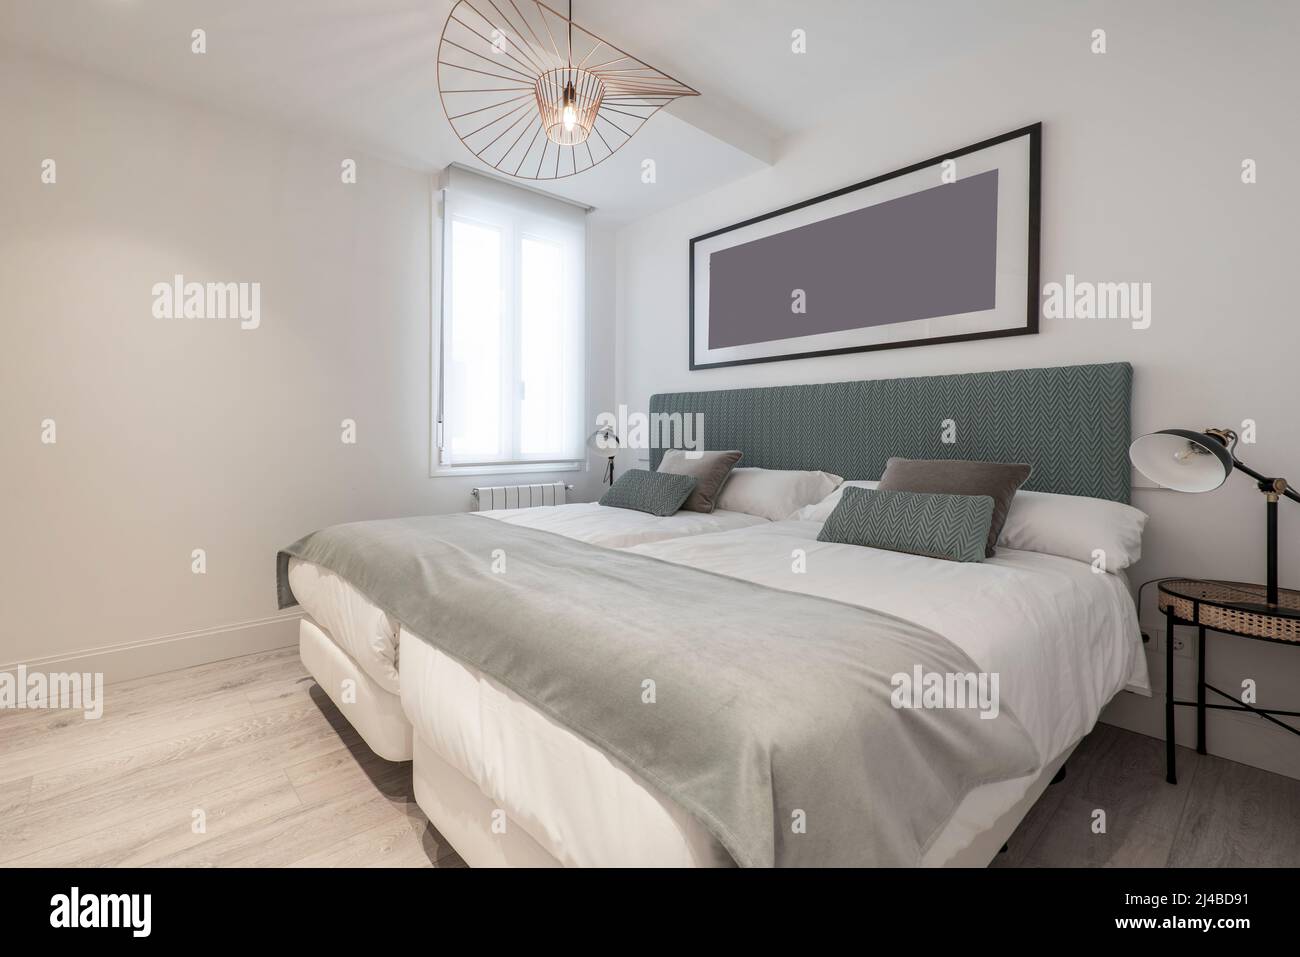 Dormitorio con dos camas individuales juntas, cabecera tapizada en tela  verde, mesitas de noche de mimbre y metal y una hermosa lámpara en el techo  Fotografía de stock - Alamy